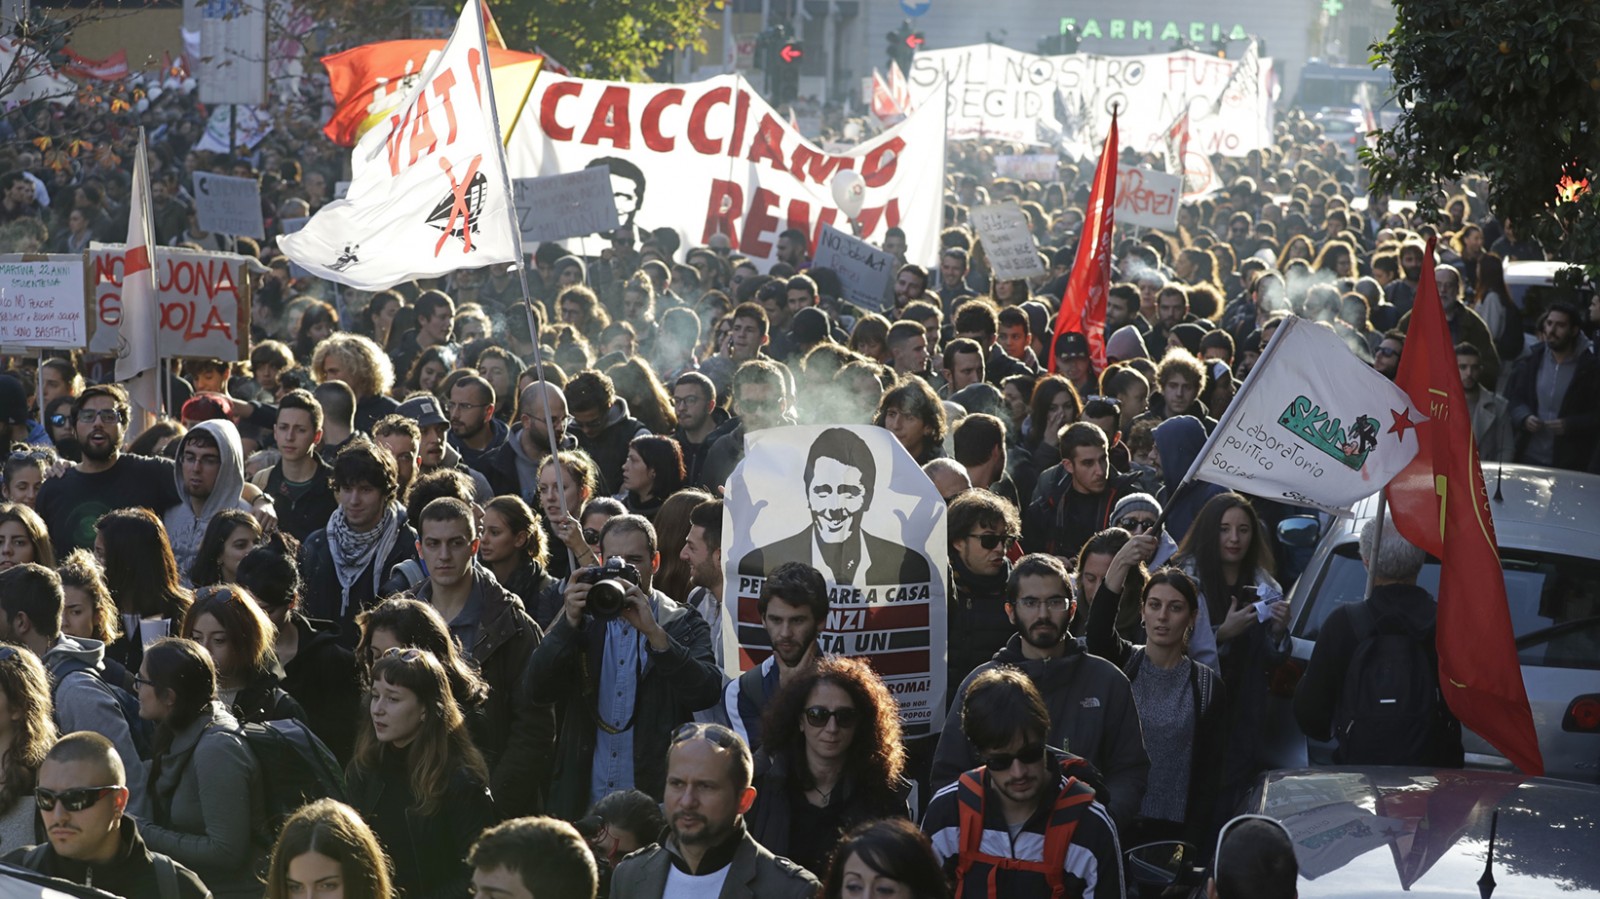 מתנגדים לשינוי החוקתי צועדים ברחובות איטליה נושאים שלטים "נוציא את רנצי" (צילום: AP)